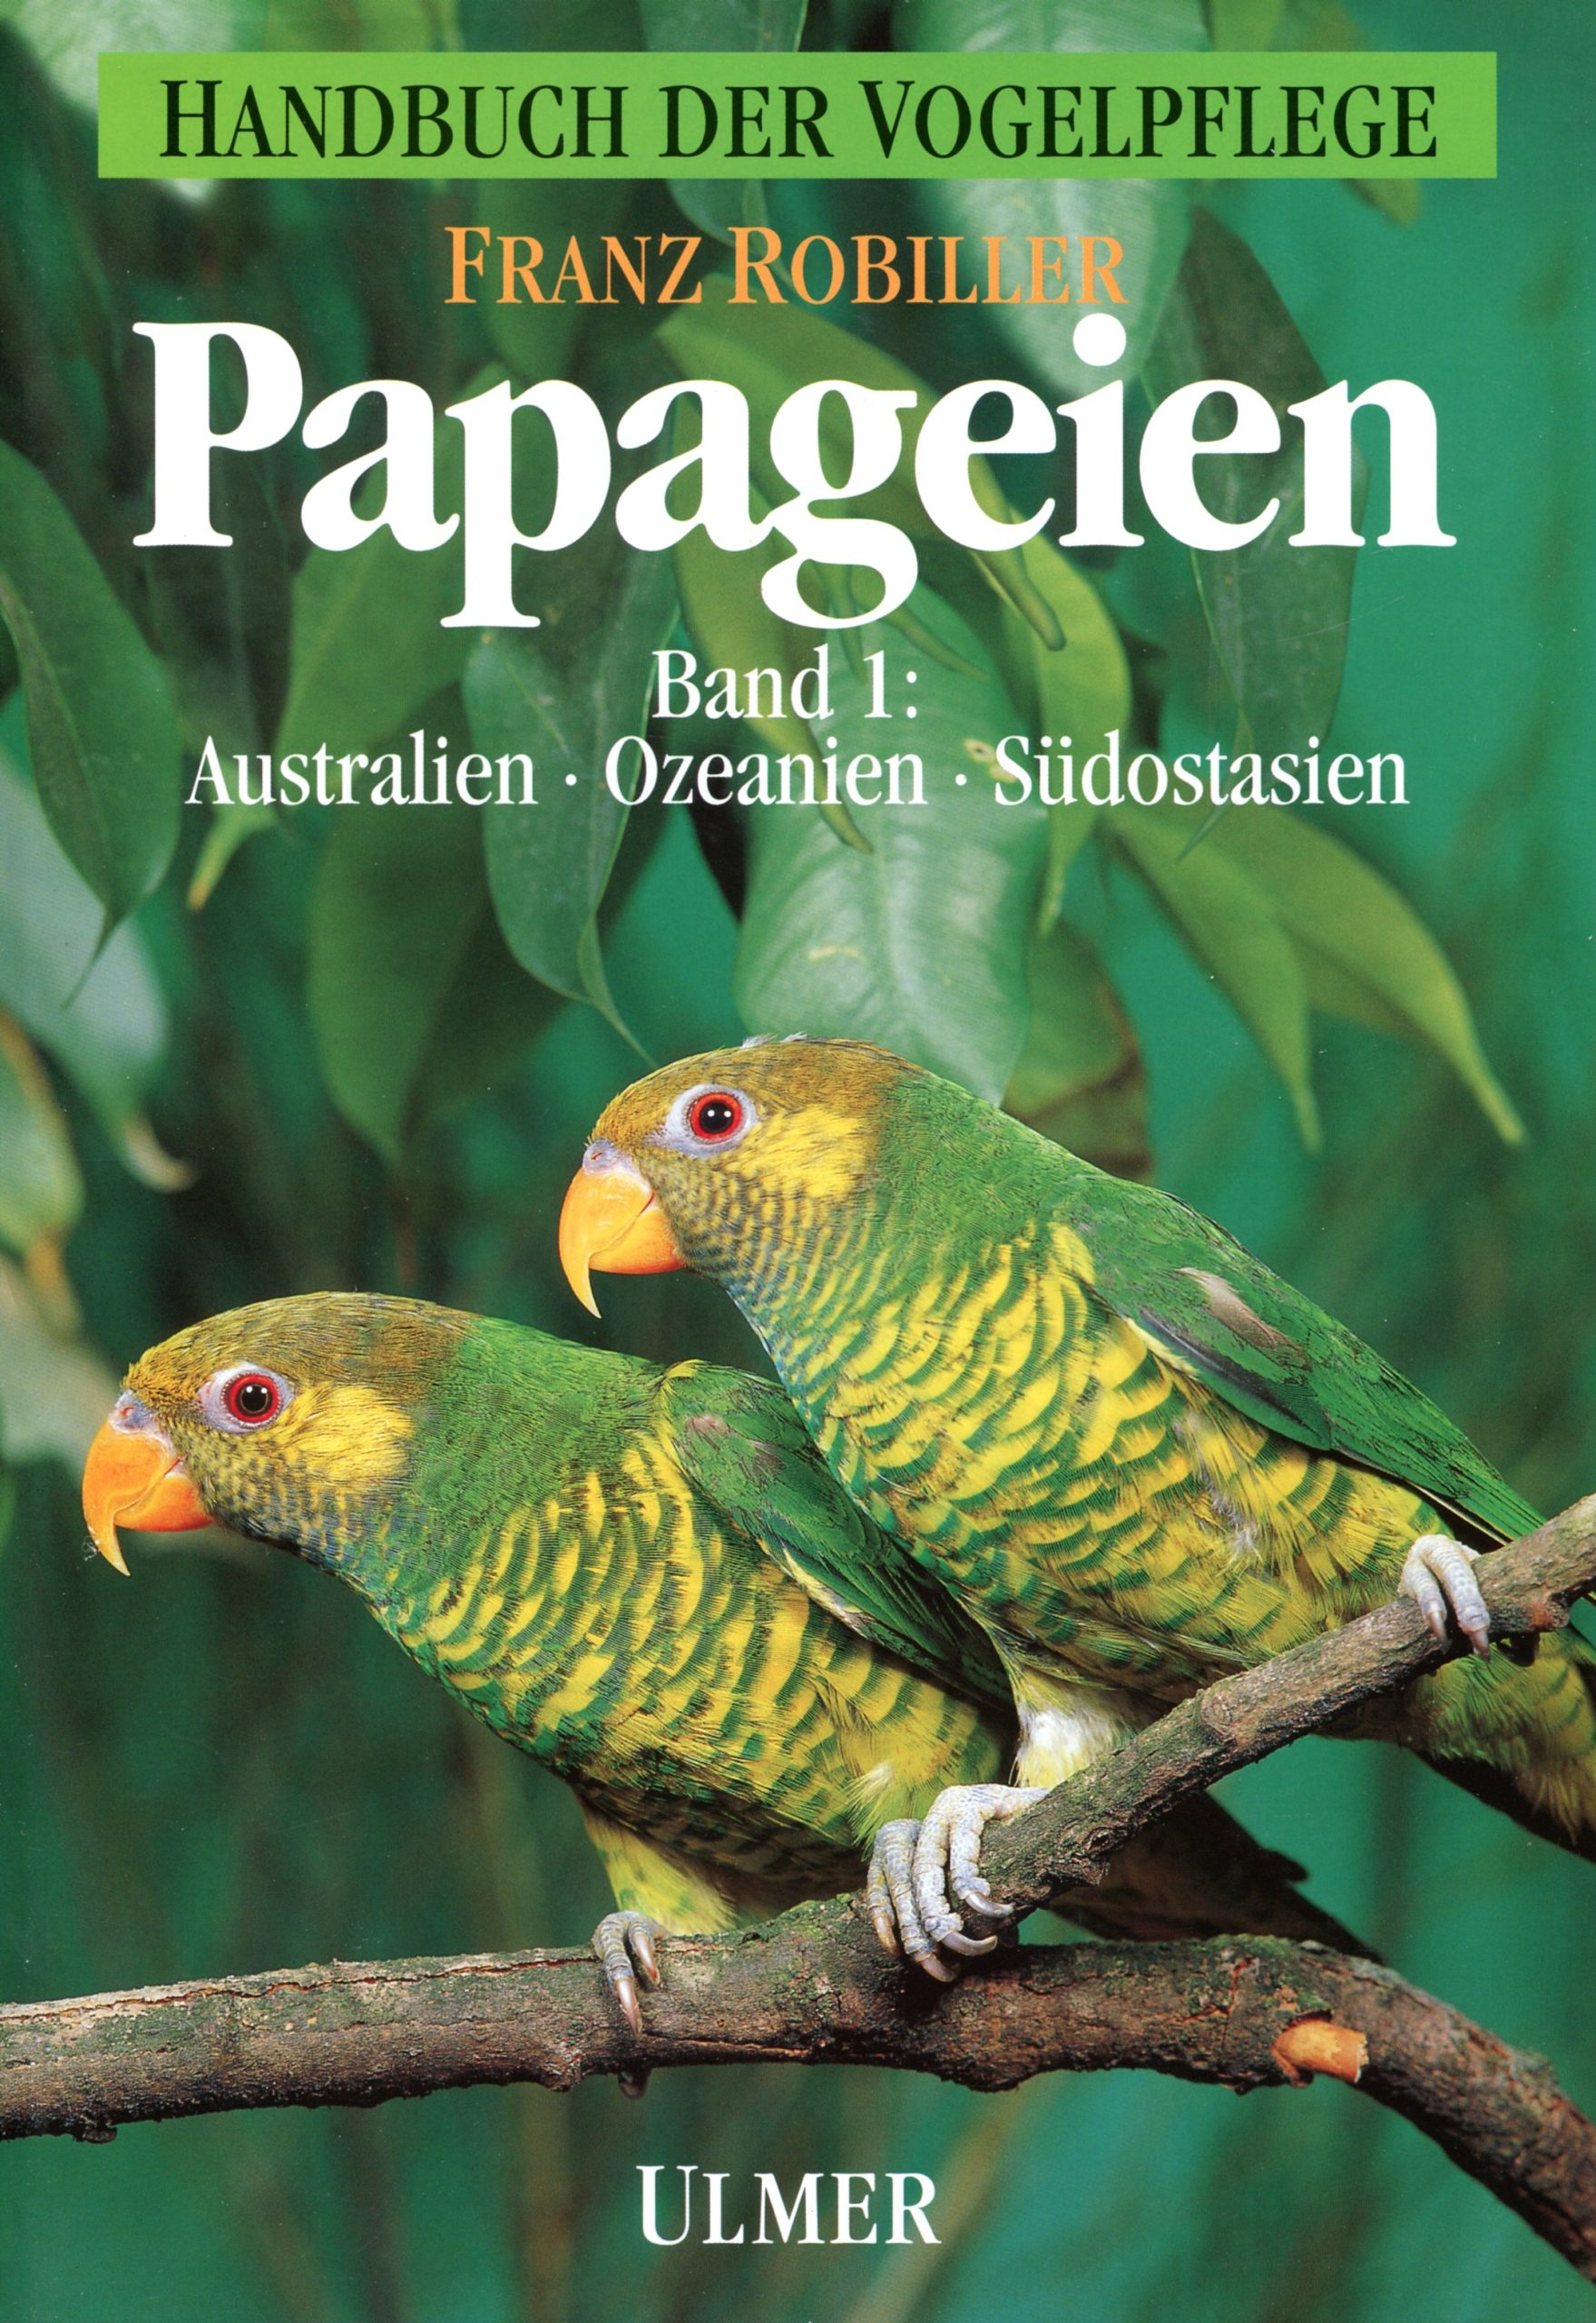 Papageien Band 1 – Australien, Ozeanien, Südostasien